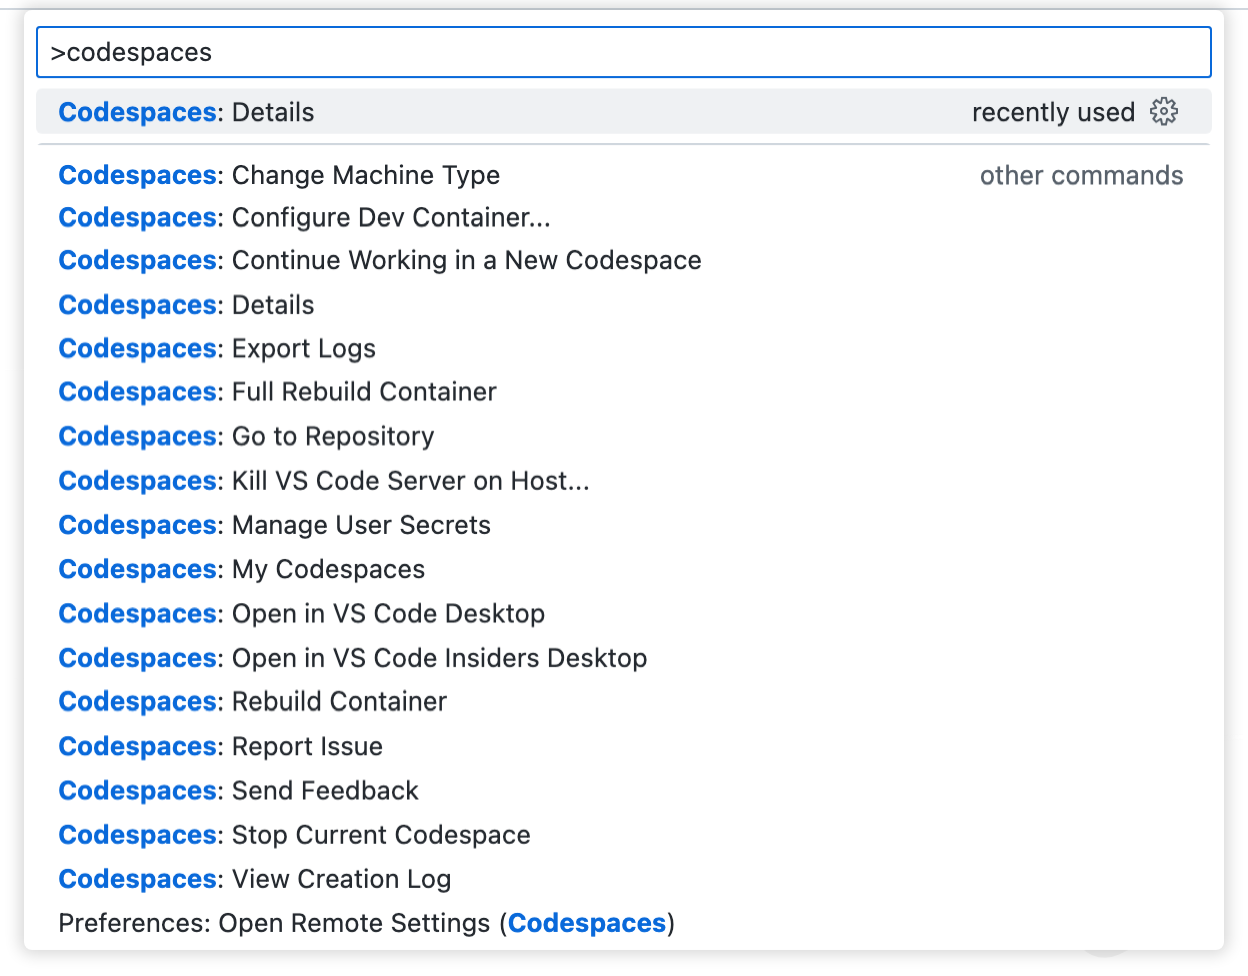 Captura de tela da Paleta de Comandos com "codespaces" digitado. A lista suspensa mostra todos os comandos relacionados ao GitHub Codespaces.